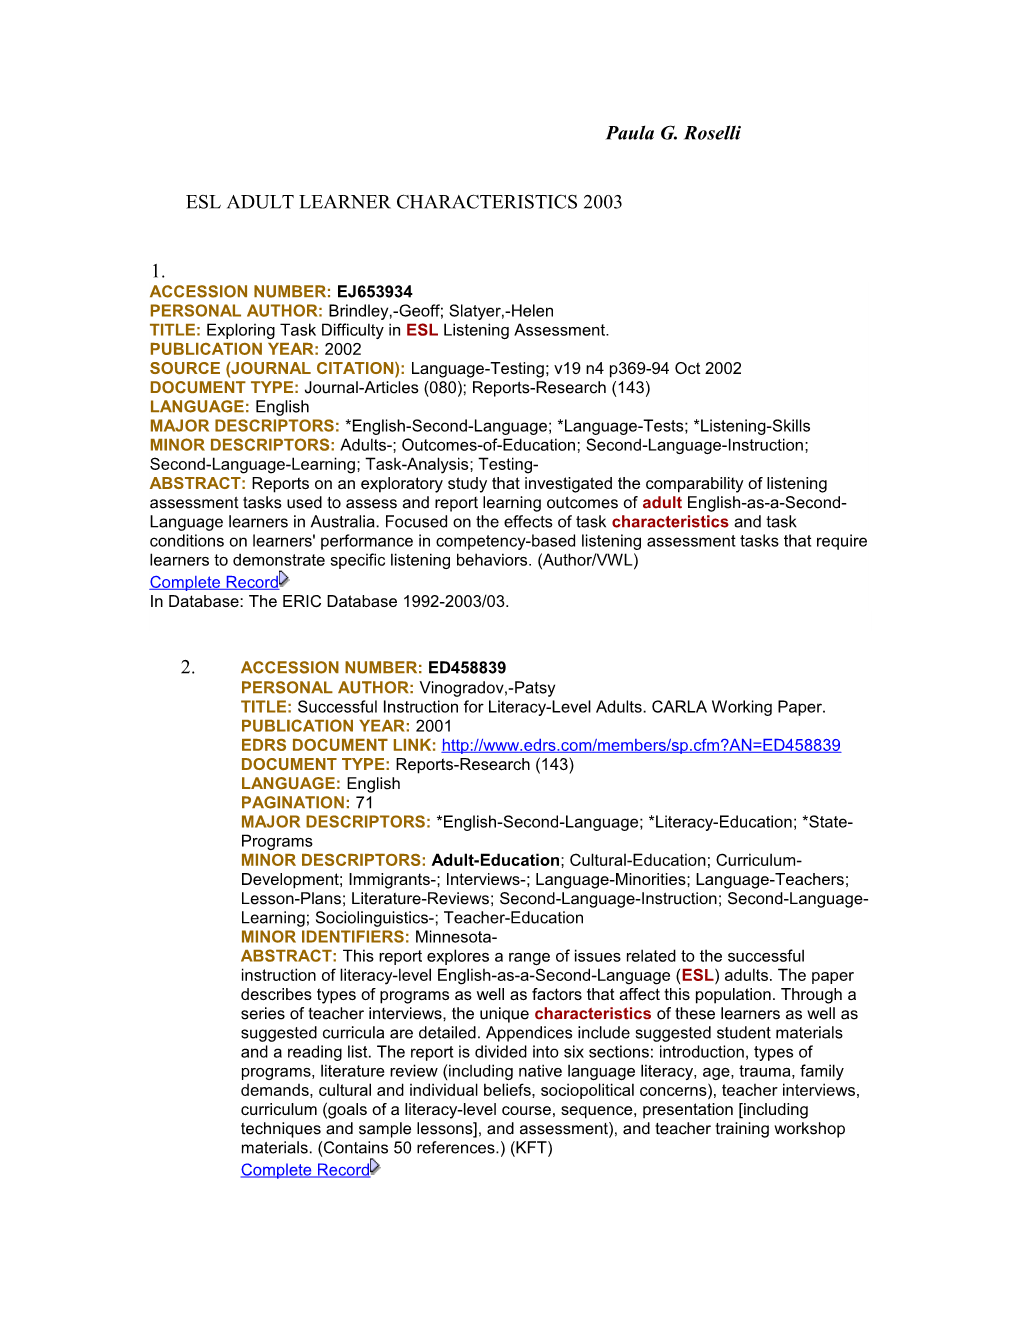 Esl Adult Learner Characteristics 2003